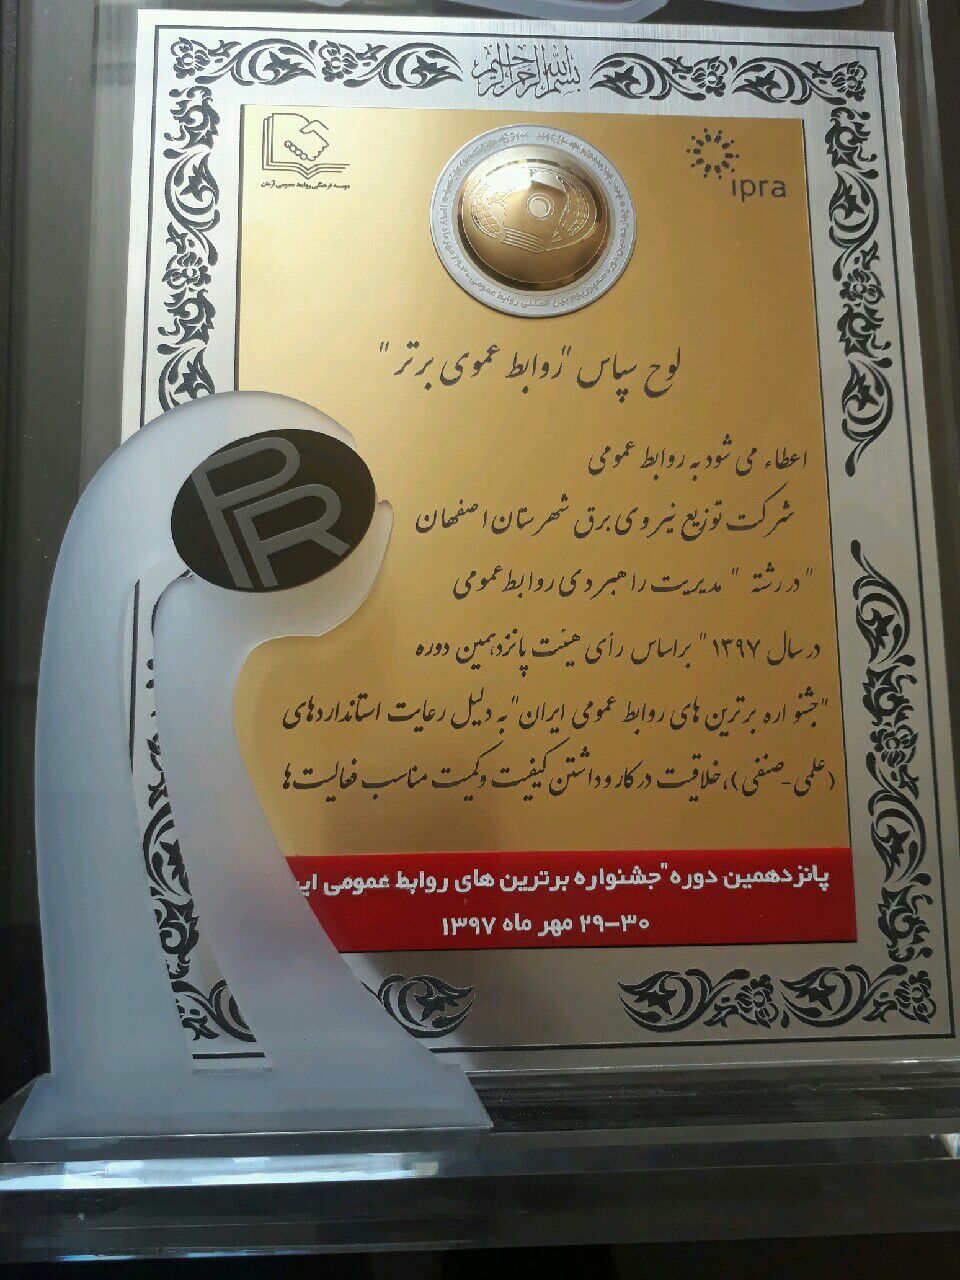 ابتکار و برتری مسابقات مهارت شغلی از آن شرکت توزیع برق شهرستان اصفهان